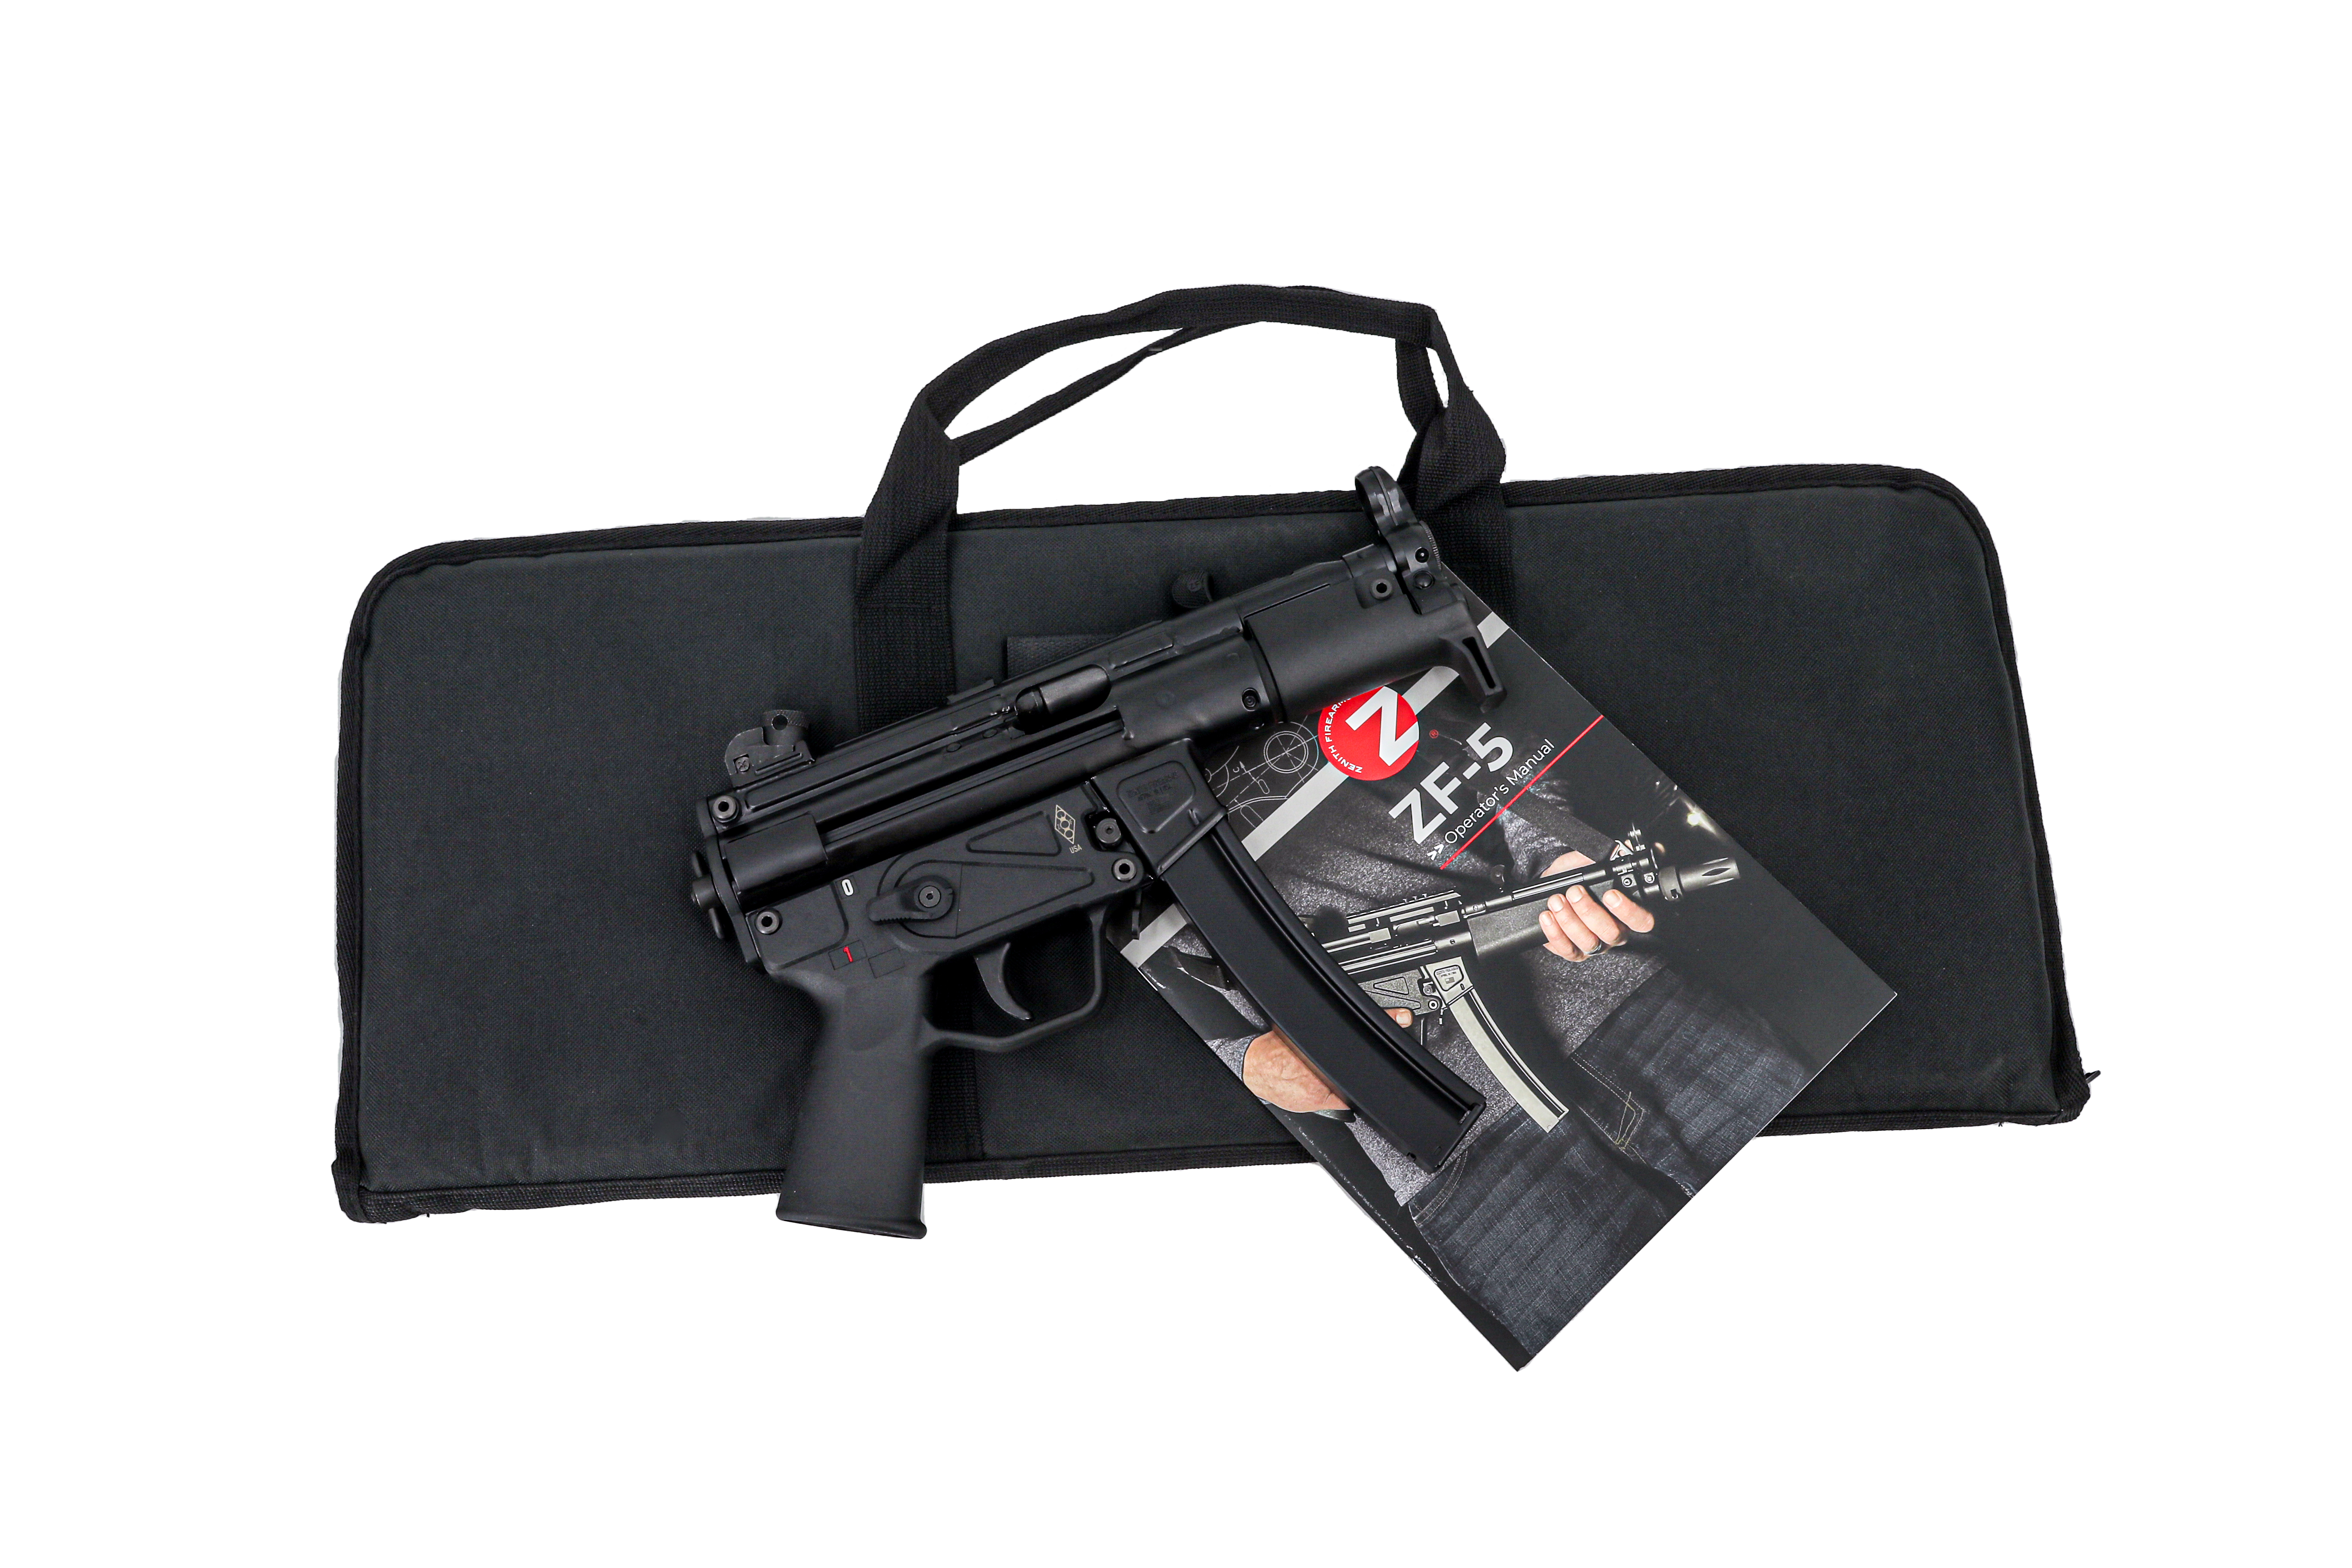 Zenith ZF-5K Pistol Essentials Plus Package MP5K Clone